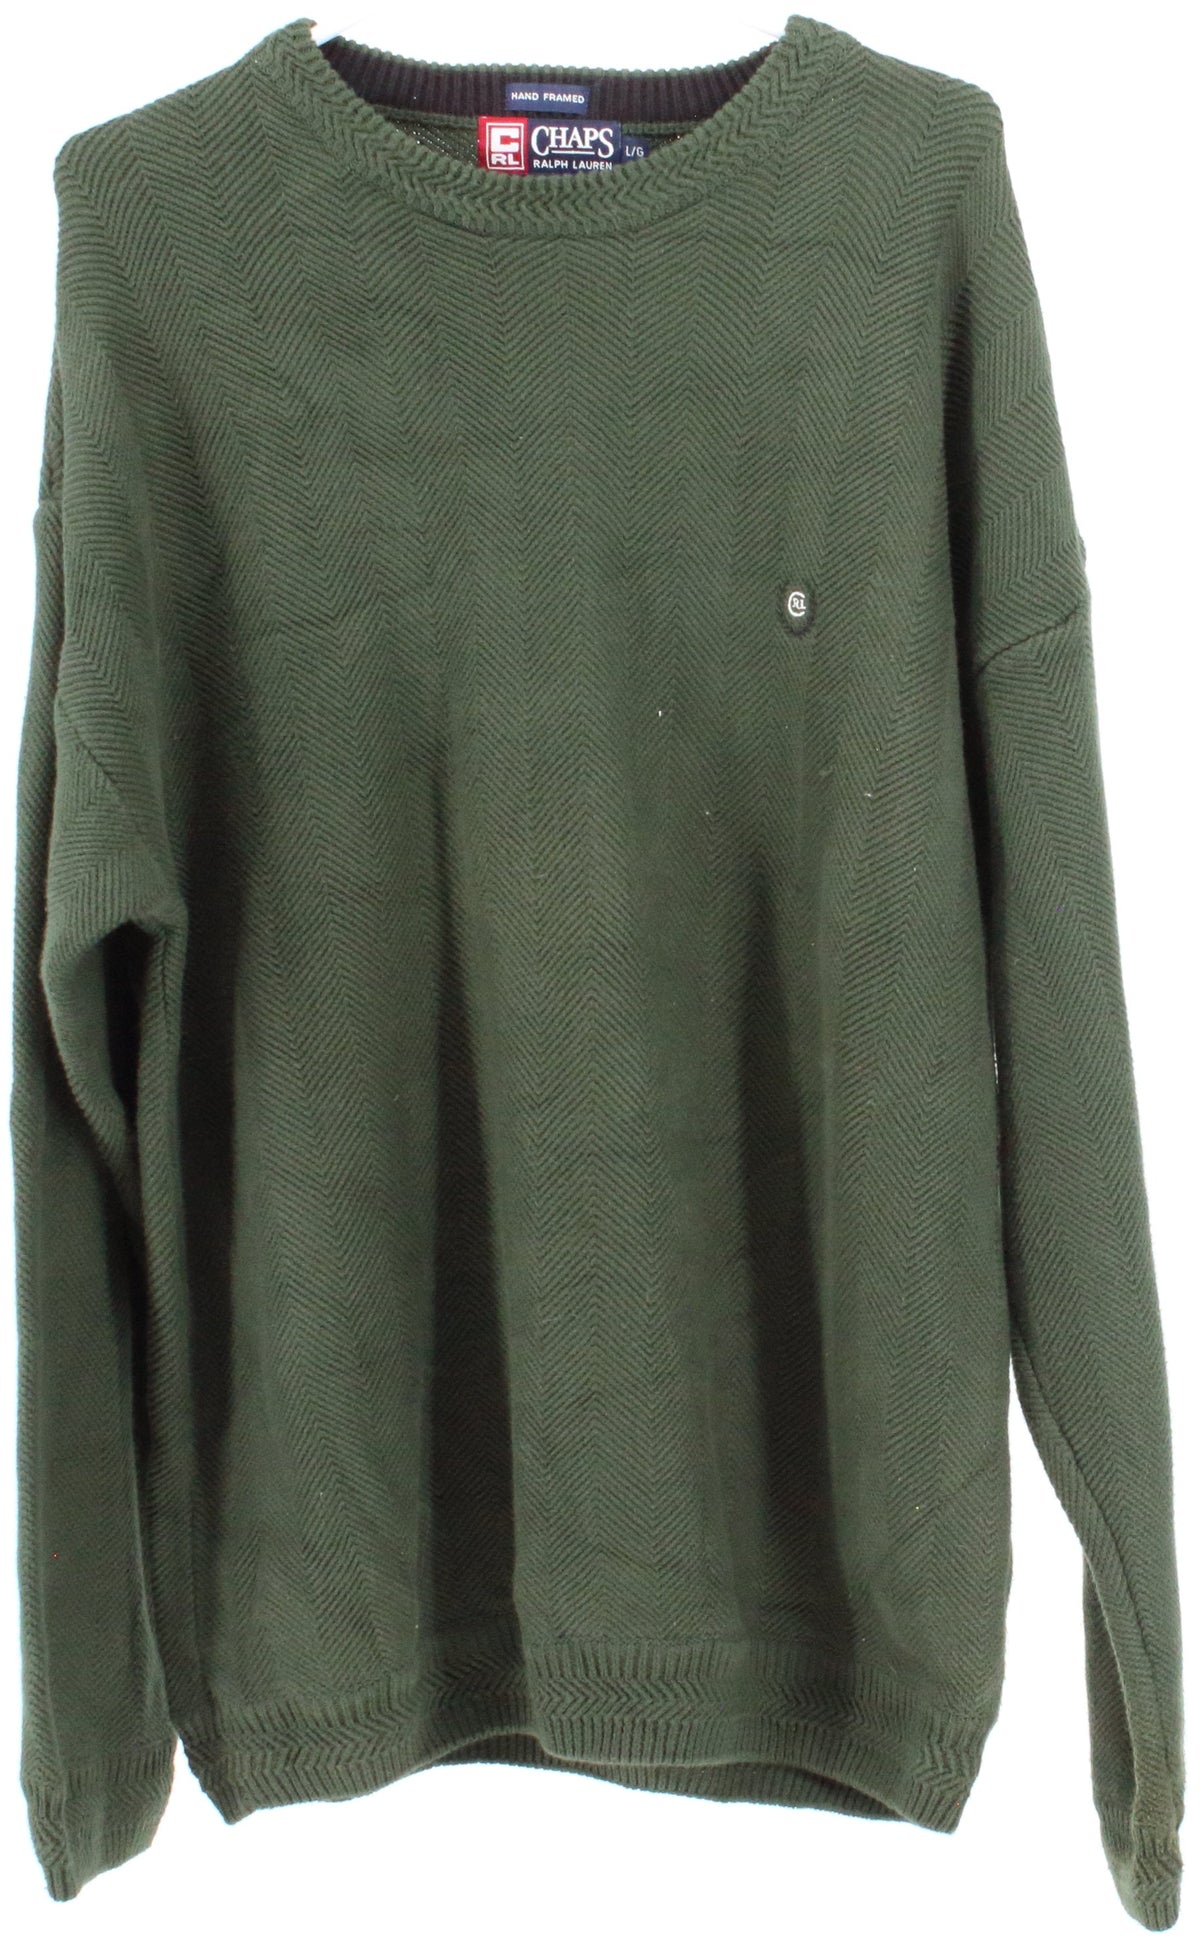 Chaps Ralph Lauren Hand Framed Green Sweater